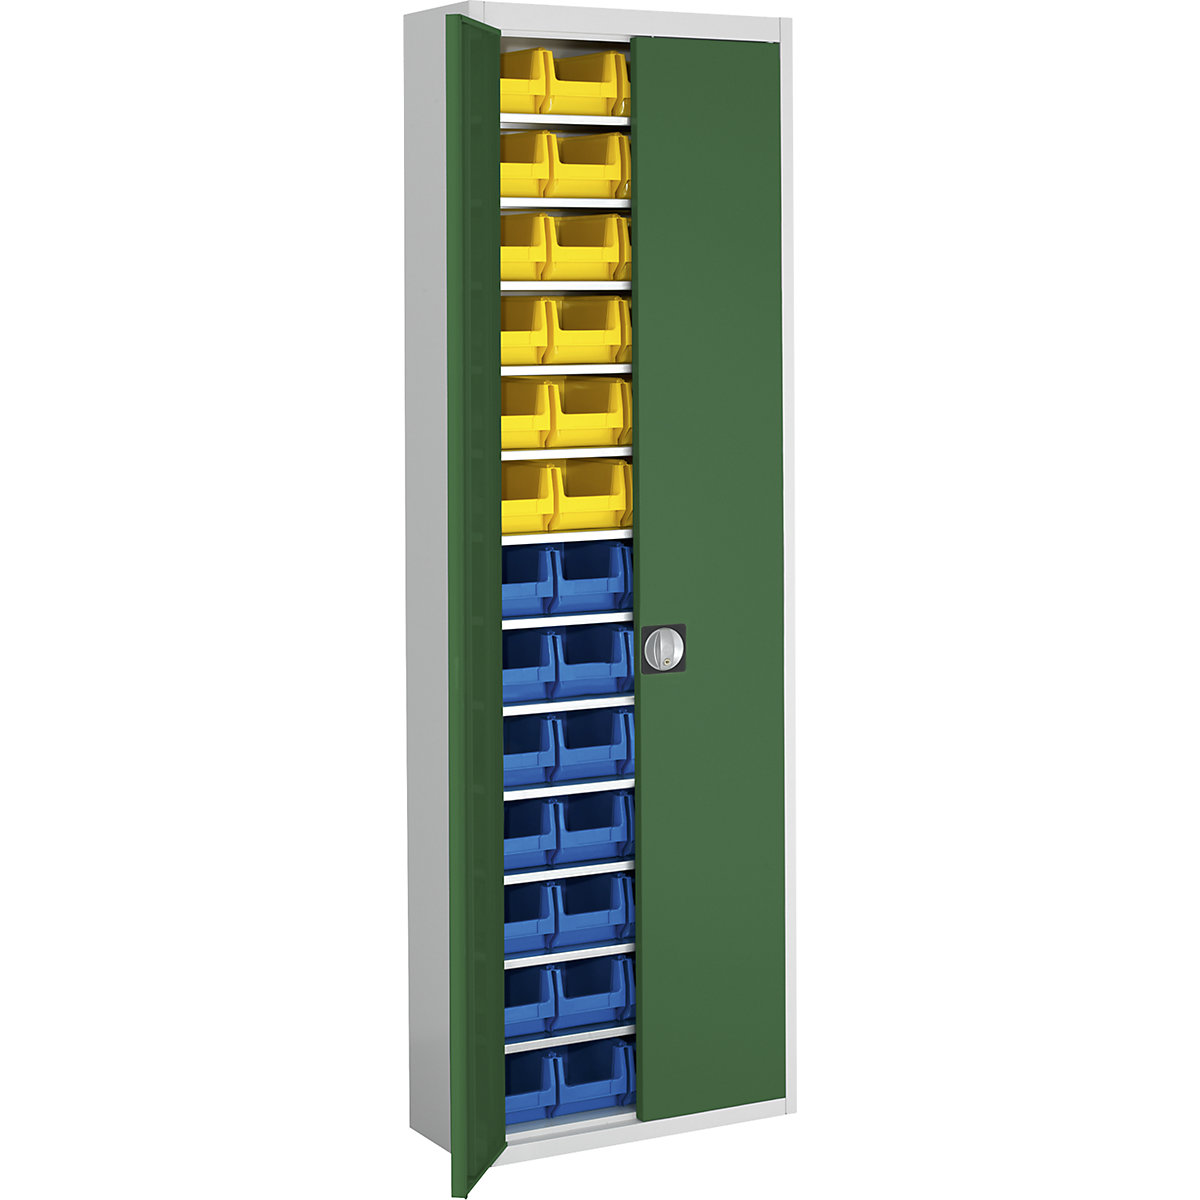 Skladová skříň s přepravkami s viditelným obsahem – mauser, v x š x h 2150 x 680 x 280 mm, dvoubarevné, korpus šedý, dveře zelené, 52 přepravek-13